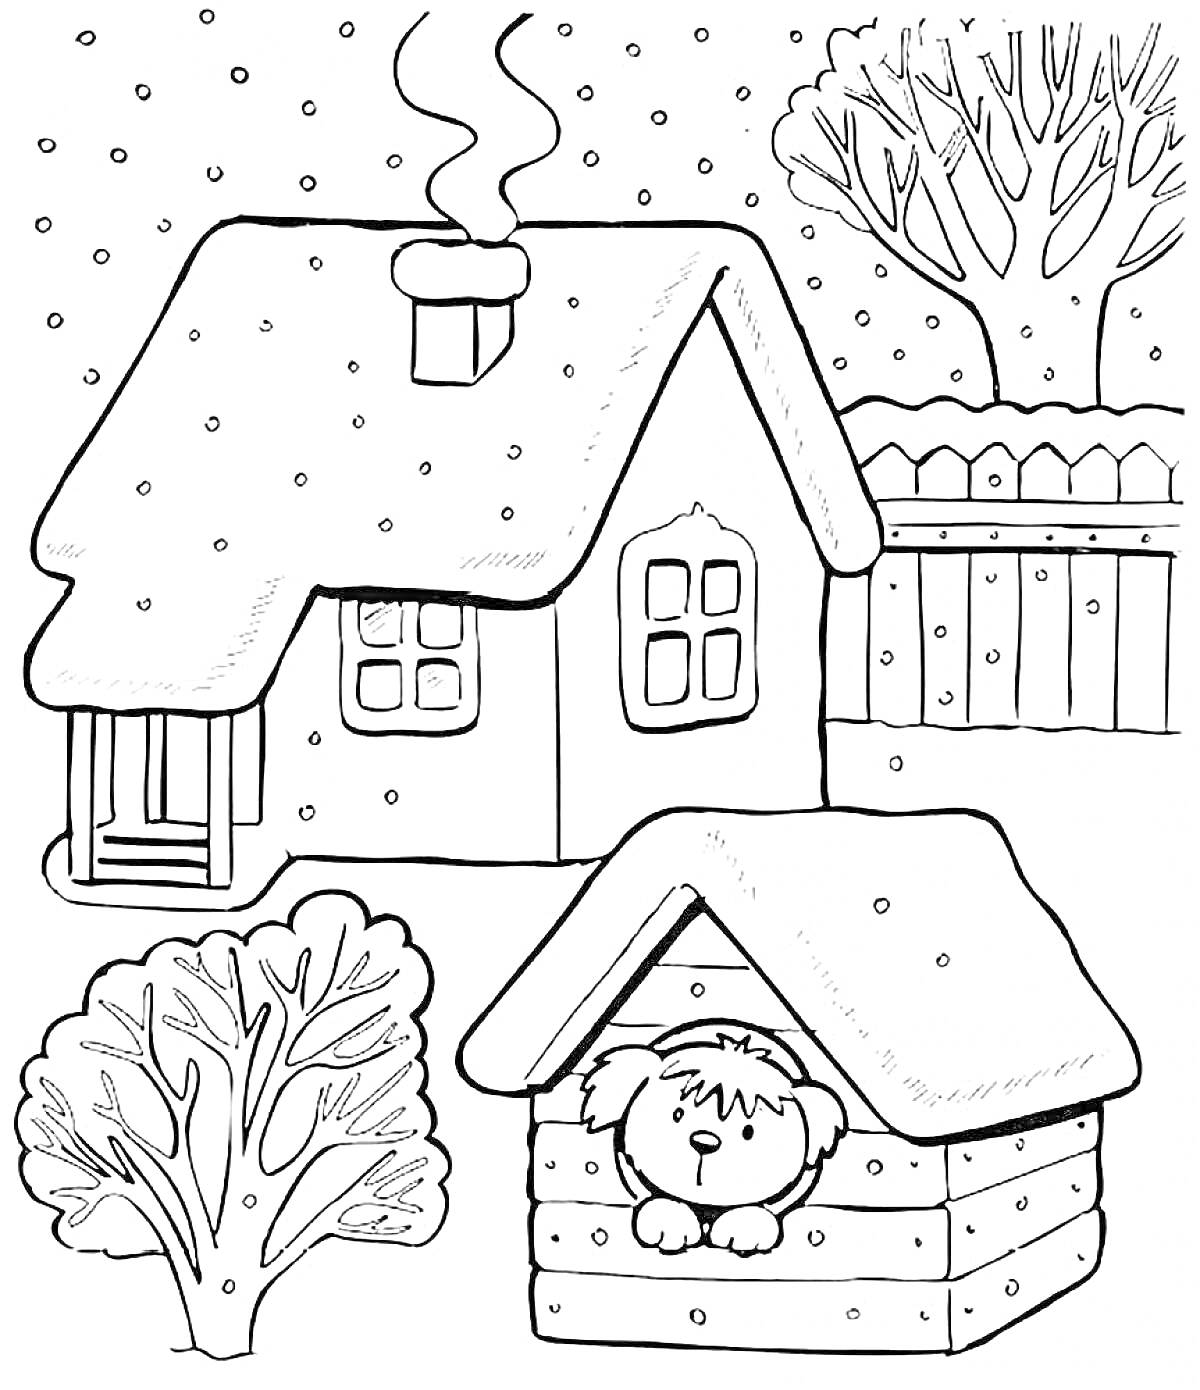 Зимний домик с будкой для собаки, деревьями и забором на заднем плане